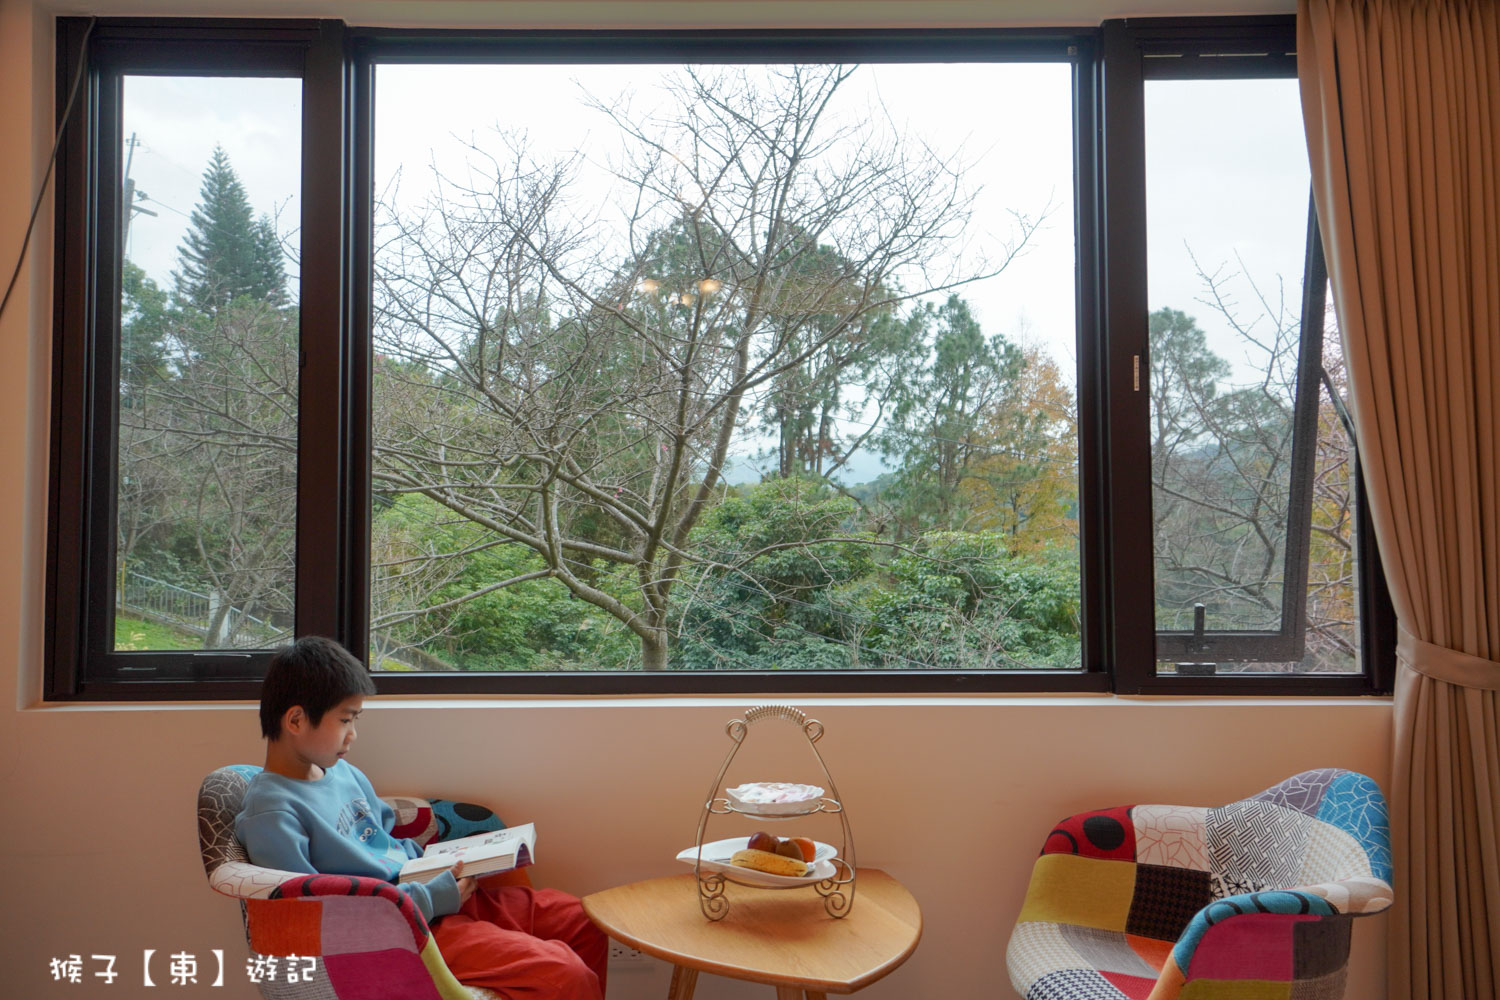 延伸閱讀：[桃園] 山水奇異民宿 窗外就是粉嫩的櫻花樹 超美風景 電梯民宿房間舒適